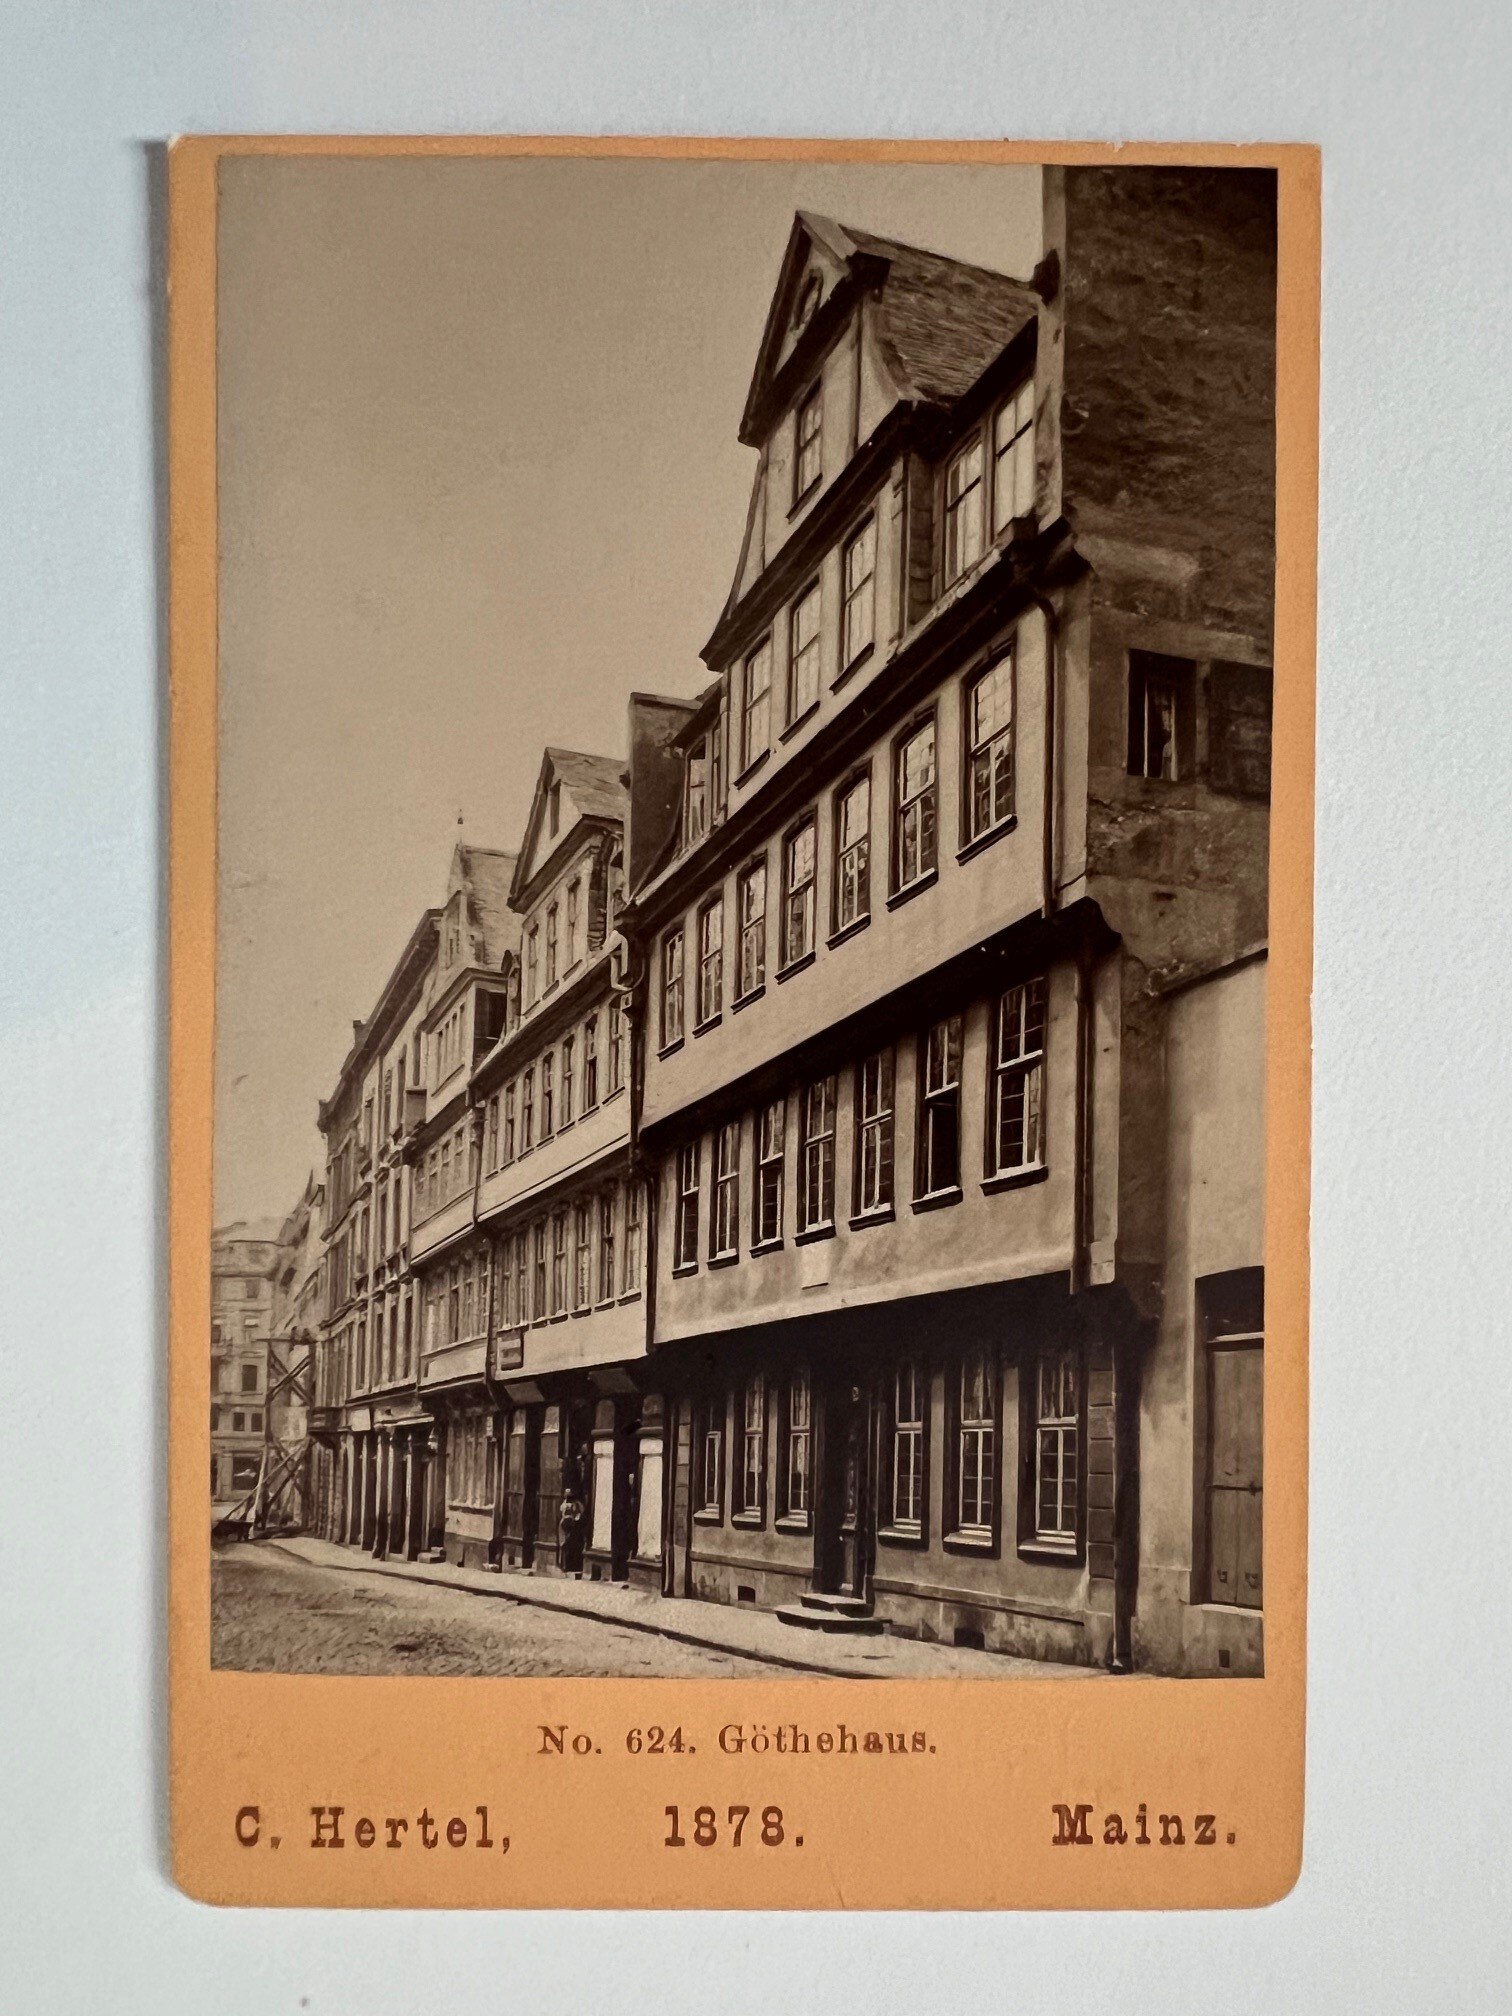 CdV, Carl Hertel, Frankfurt, Göthehaus, 1878. (Taunus-Rhein-Main - Regionalgeschichtliche Sammlung Dr. Stefan Naas CC BY-NC-SA)